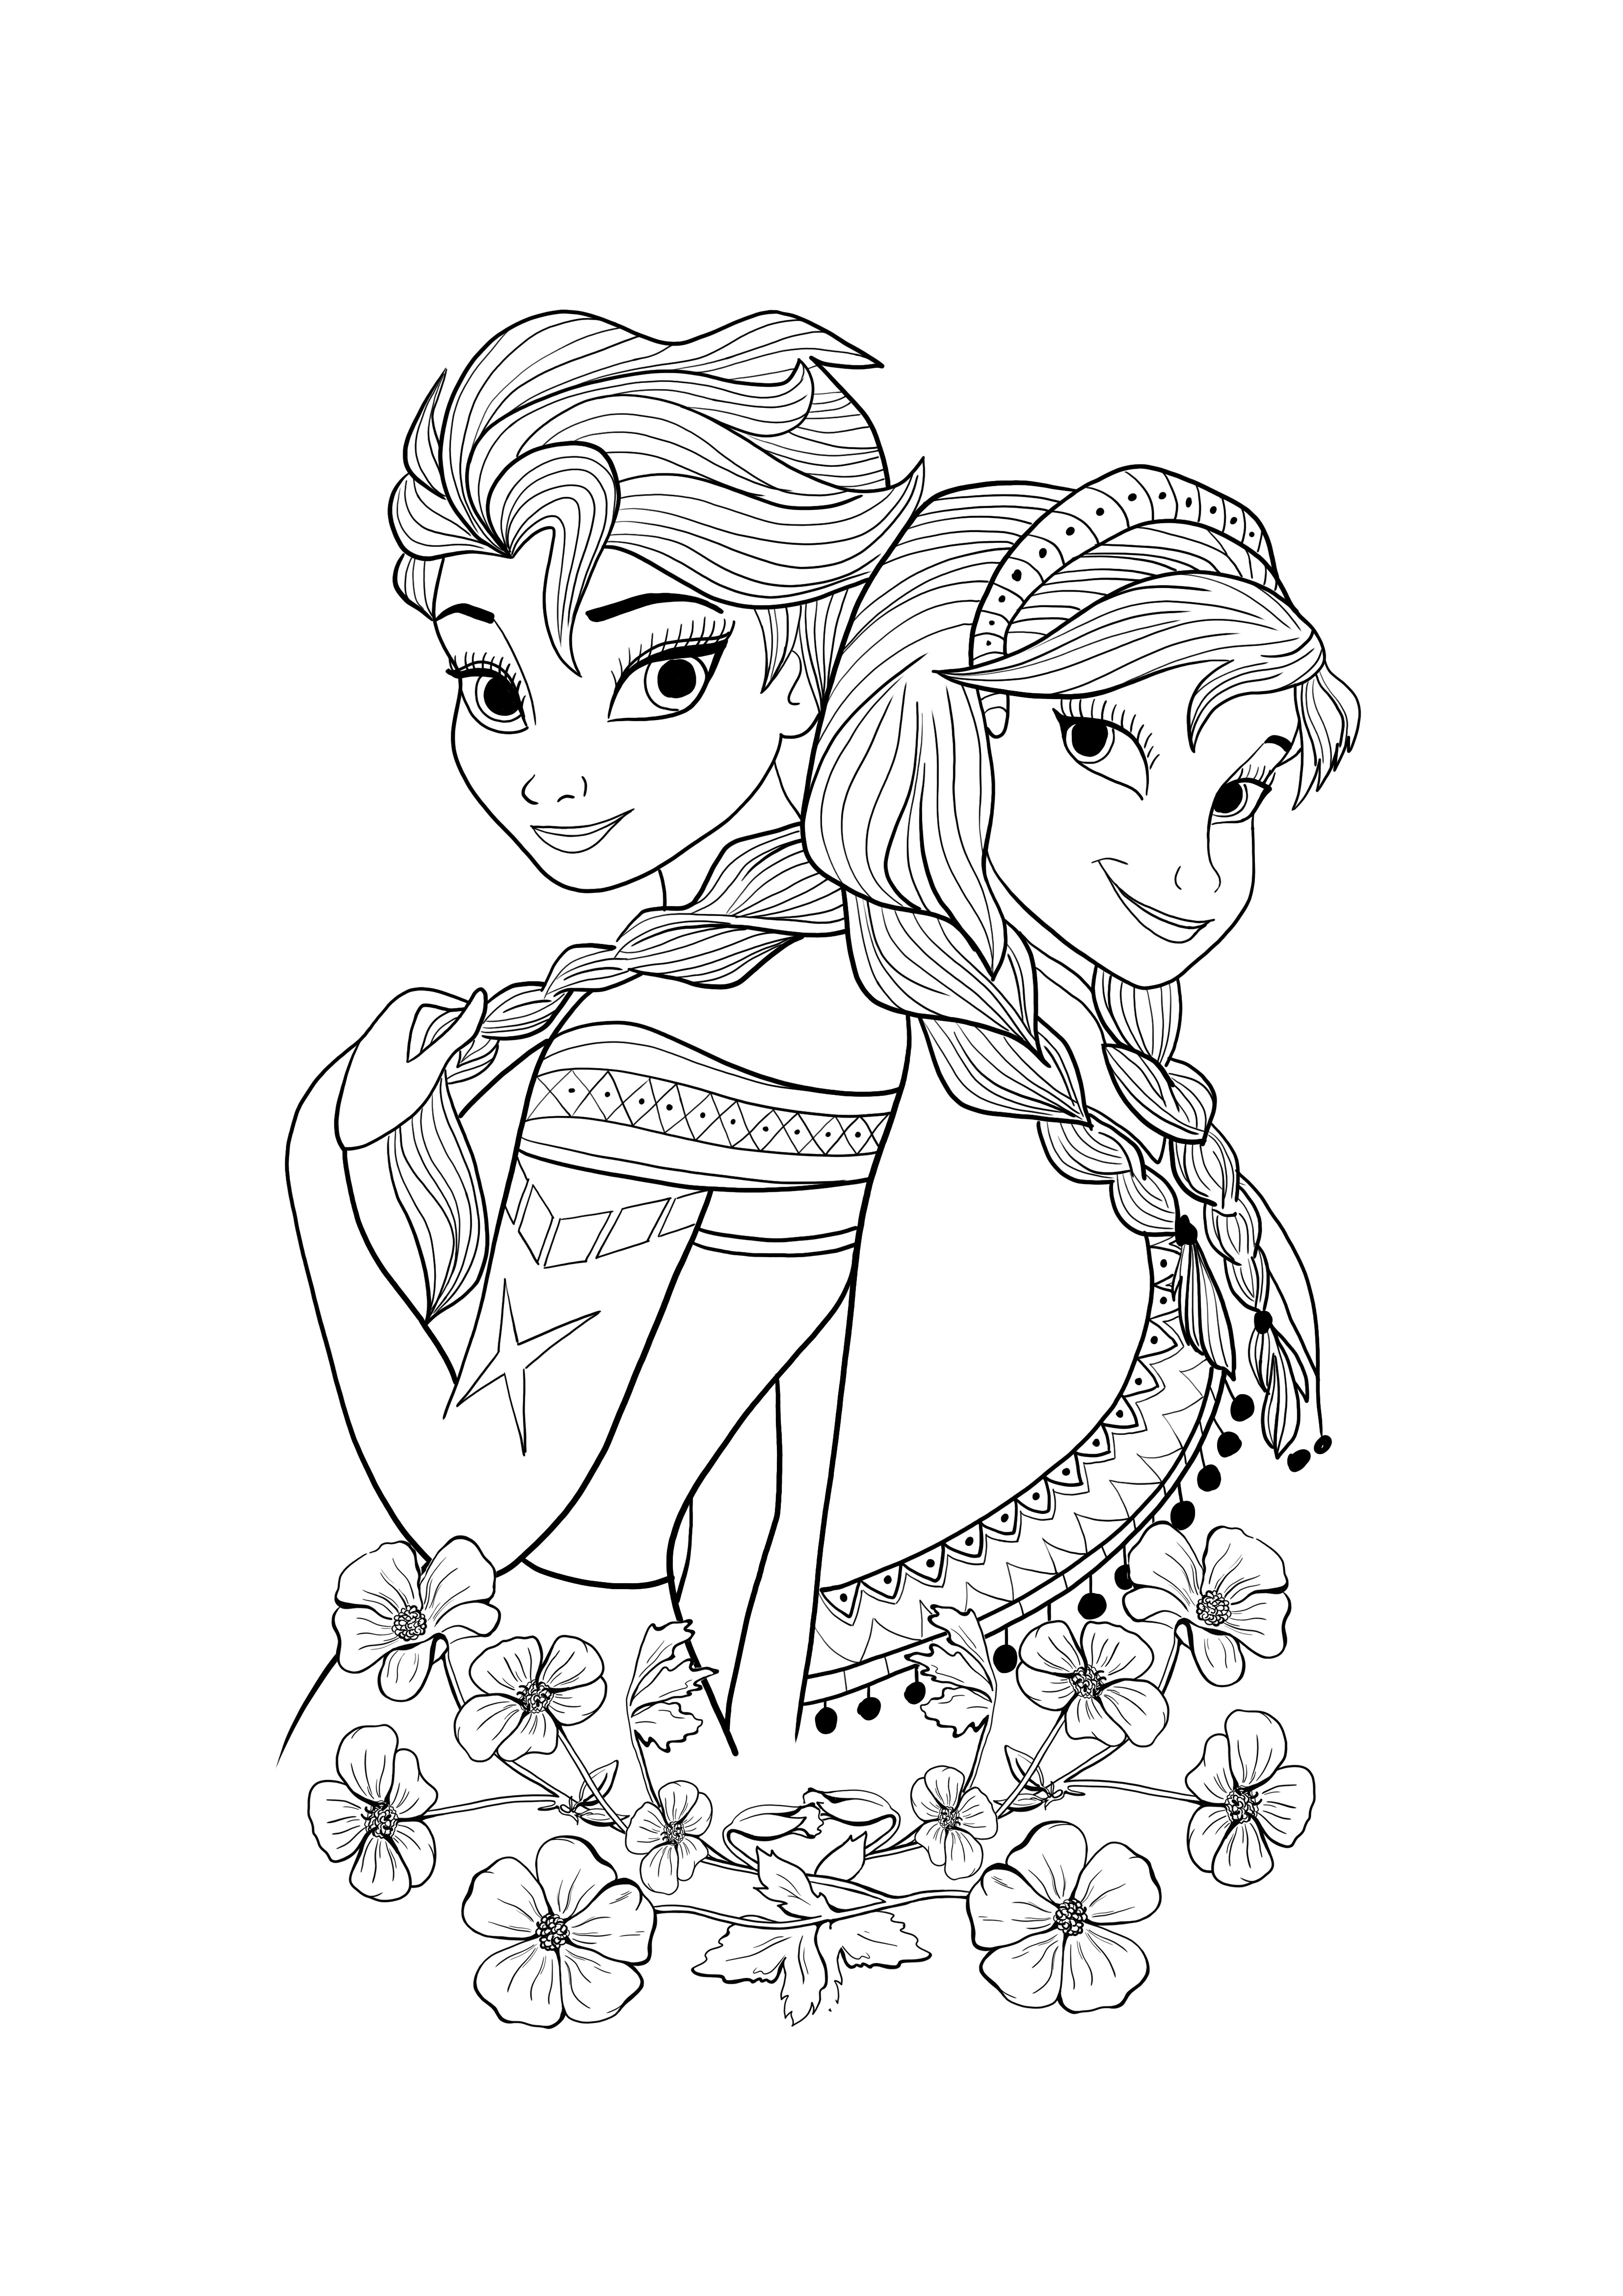 Elsa și Ana de descărcat și colorat gratuit